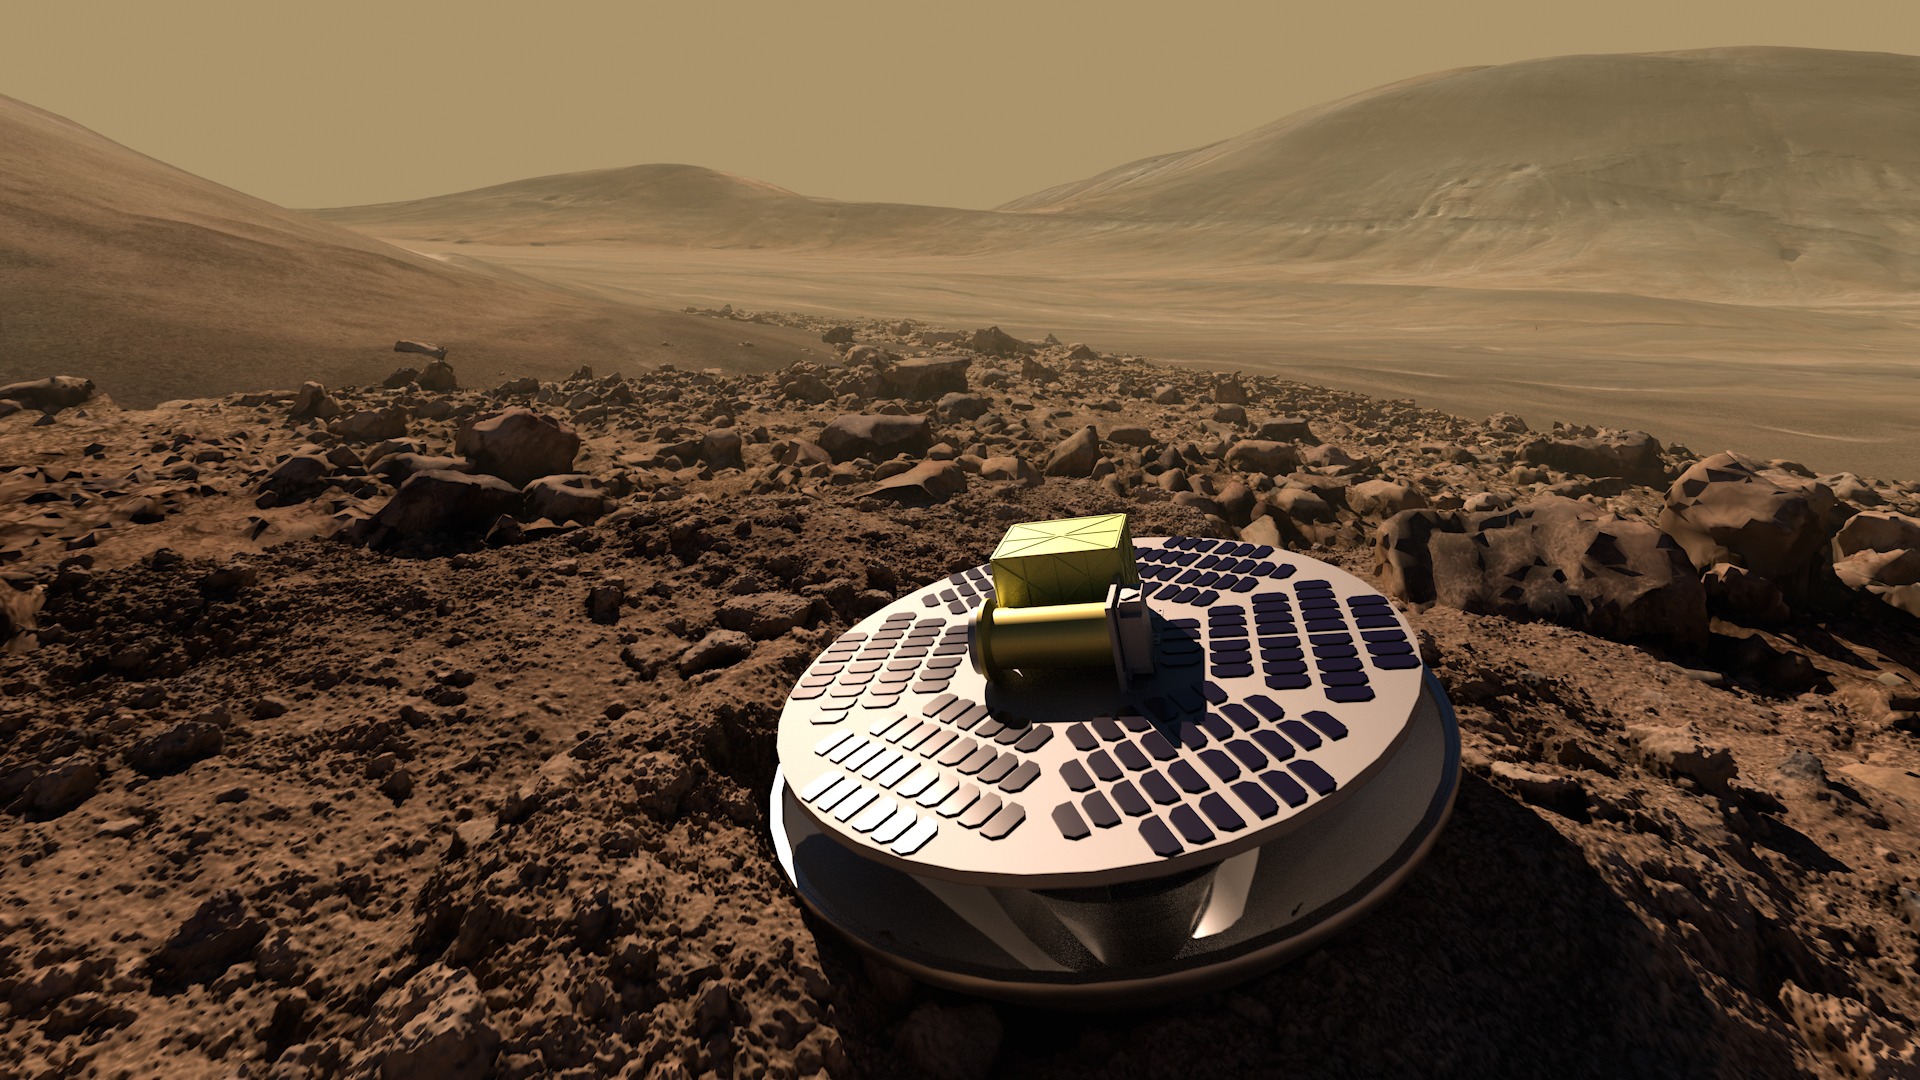 Ilustracija SHIELD-a, koncepta lendera za Mars koji bi omogućio jeftinije slijetanje na površinu Crvenog planeta mehanizmom nalik na 'harmoniku' (©California Academy of Sciences/NASA).